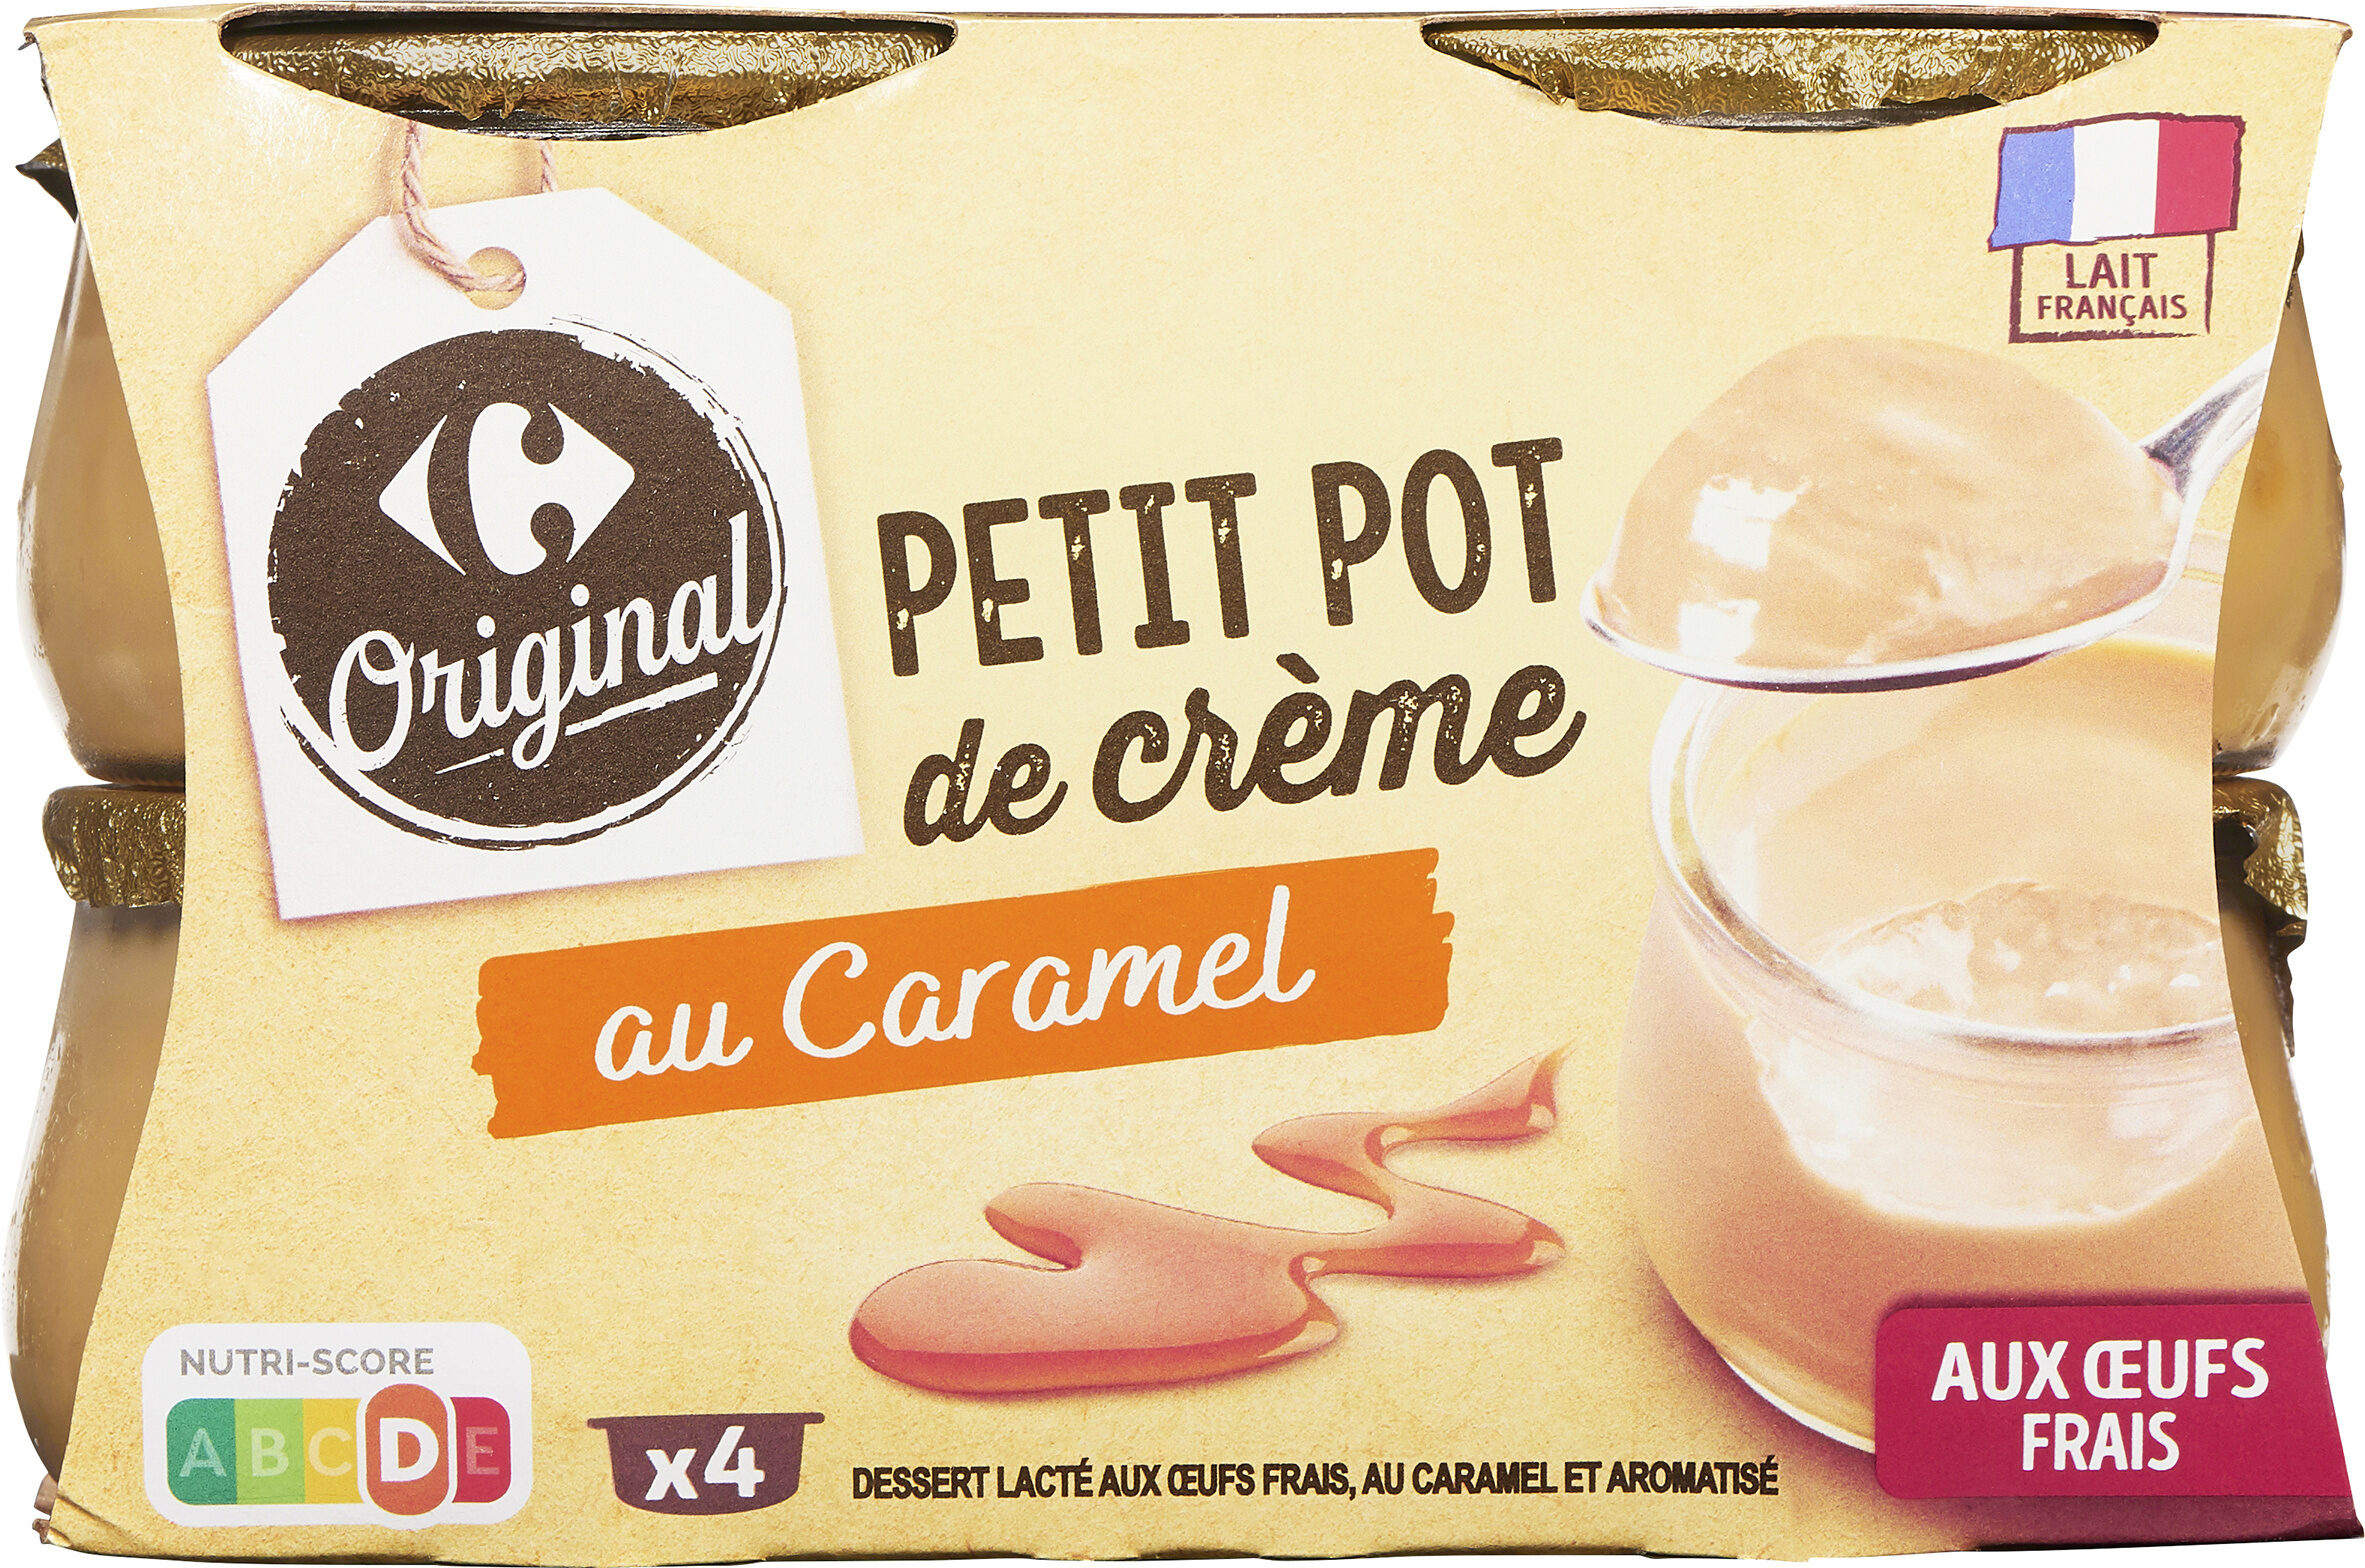 Petit pot de crème au caramel - Product - fr